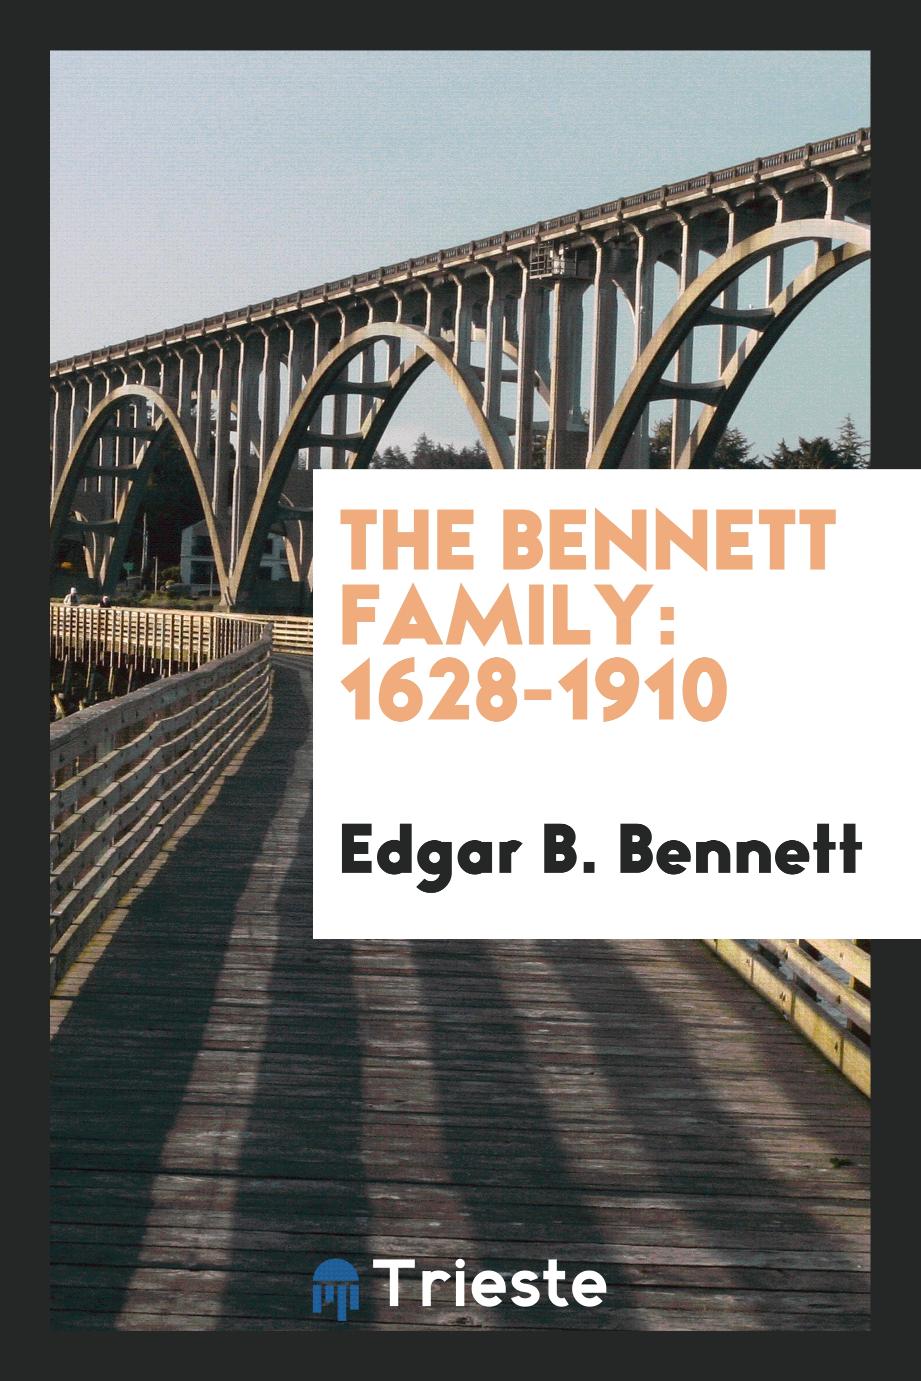 The Bennett family: 1628-1910